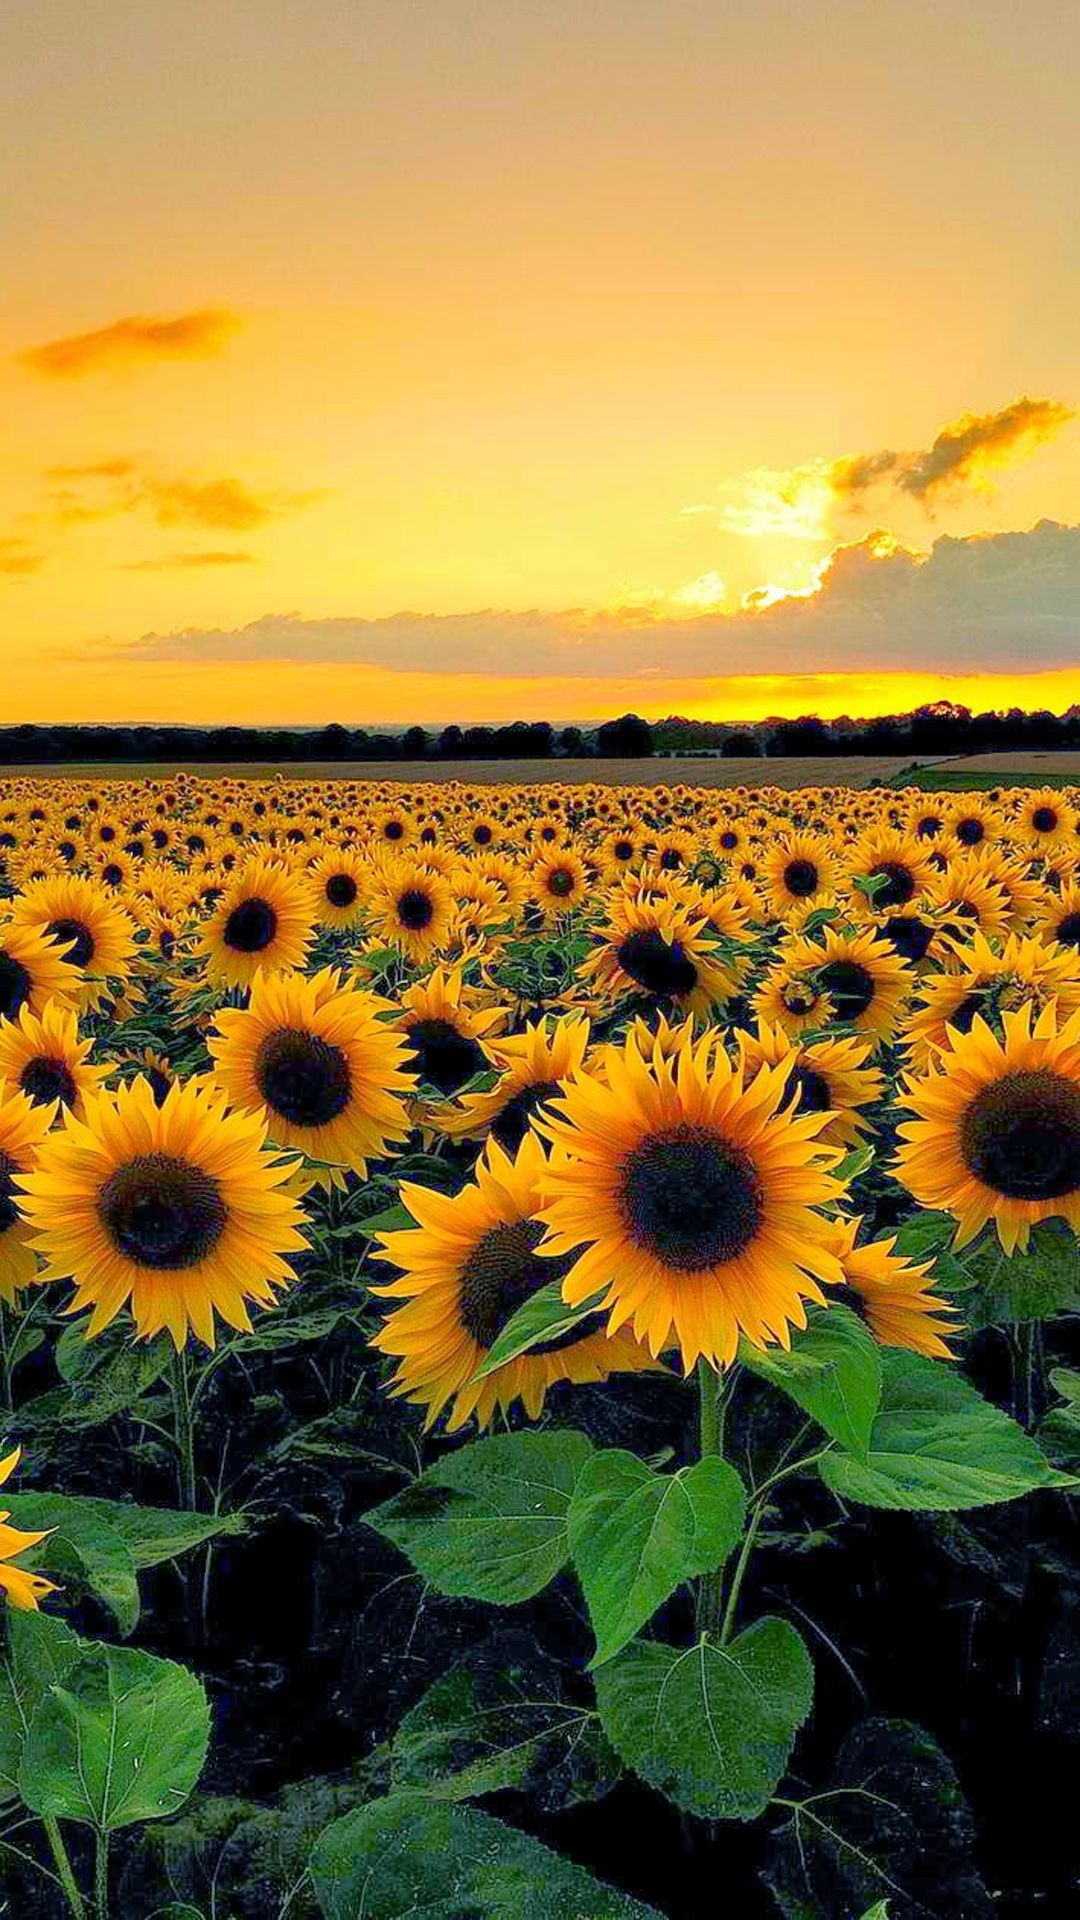 Sunset View From Sunflower Field - Sunflower Wallpaper Iphone - HD Wallpaper 